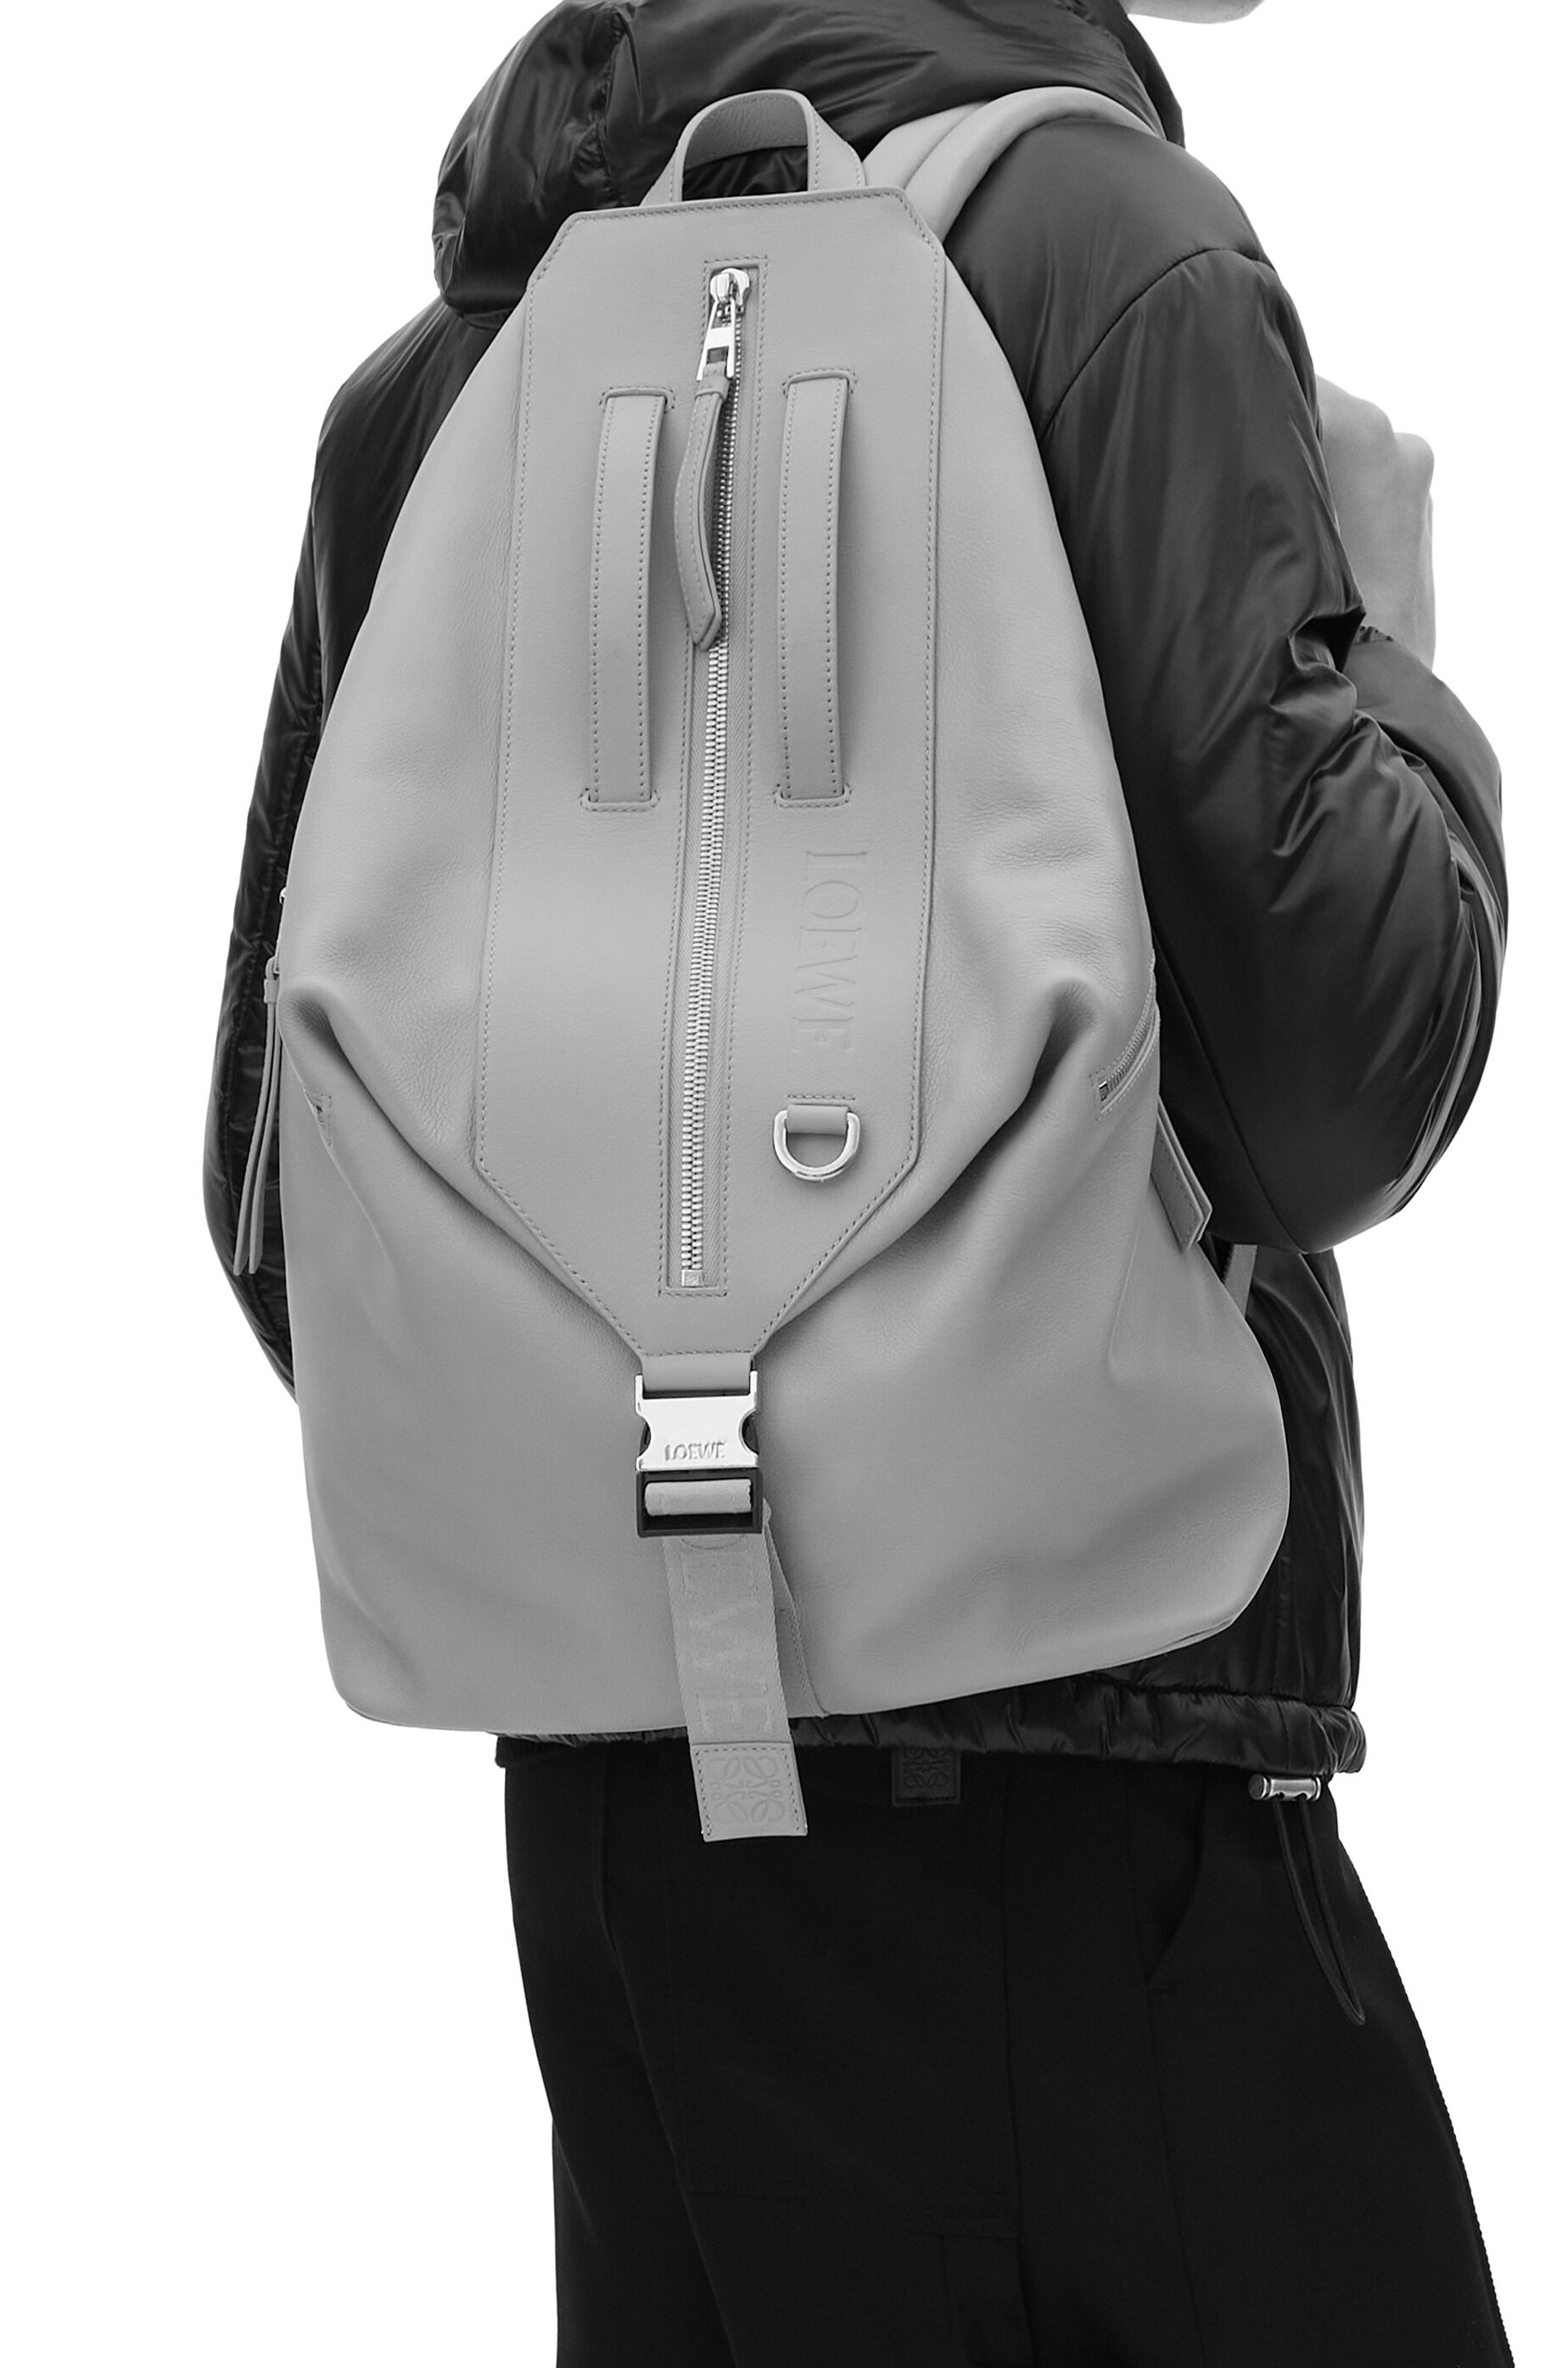 Loewe Men's 'Convertible' Leather Backpack - Black - Backpacks